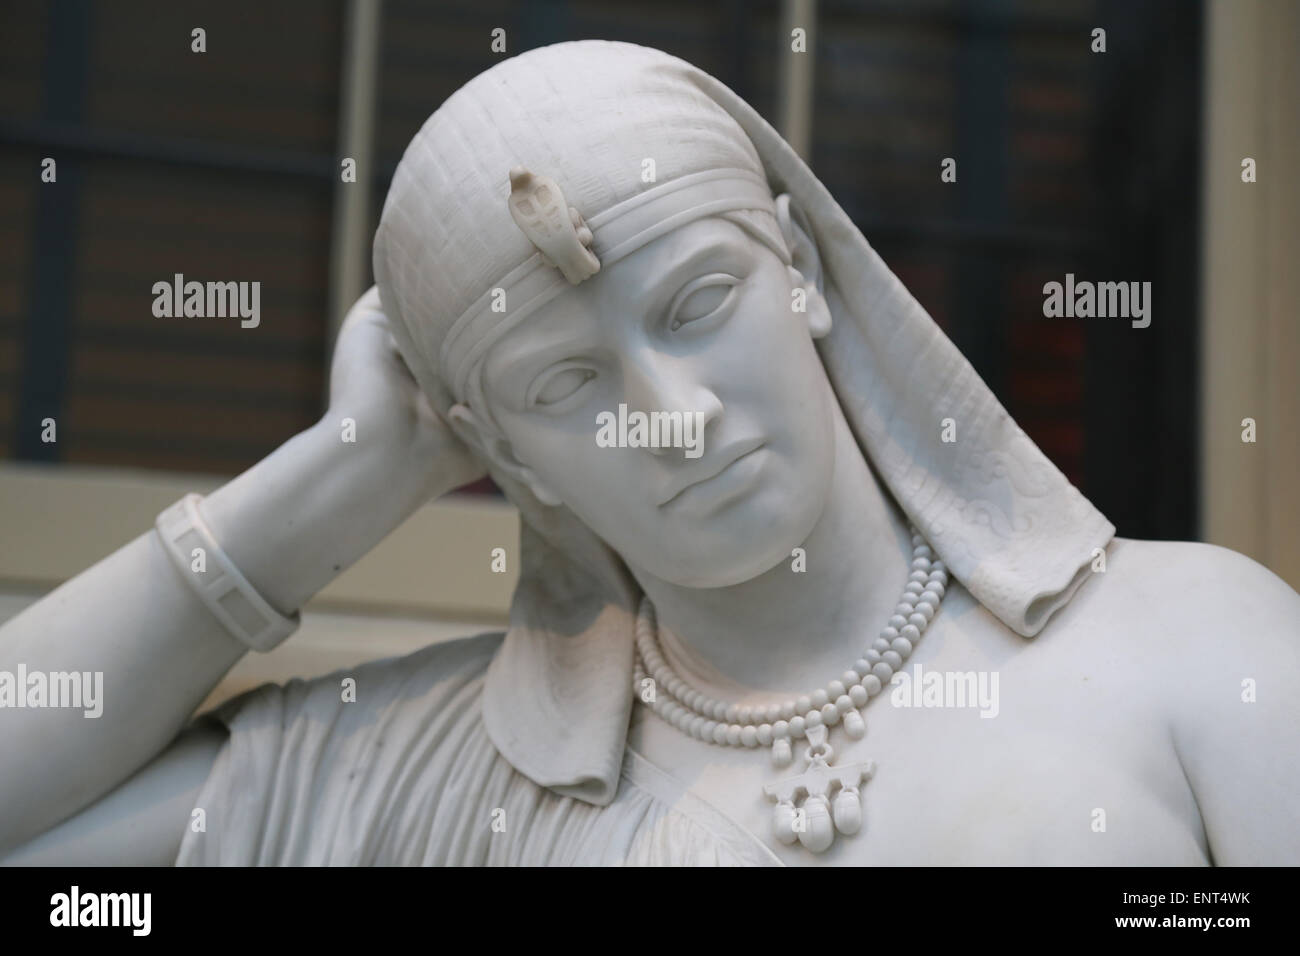 Kleopatra (69-30 v. Chr.). Königin von Ägypten. Statue von William Wetmore Geschichte (American, 1819-1895). Meditation über ihren Selbstmord. Stockfoto